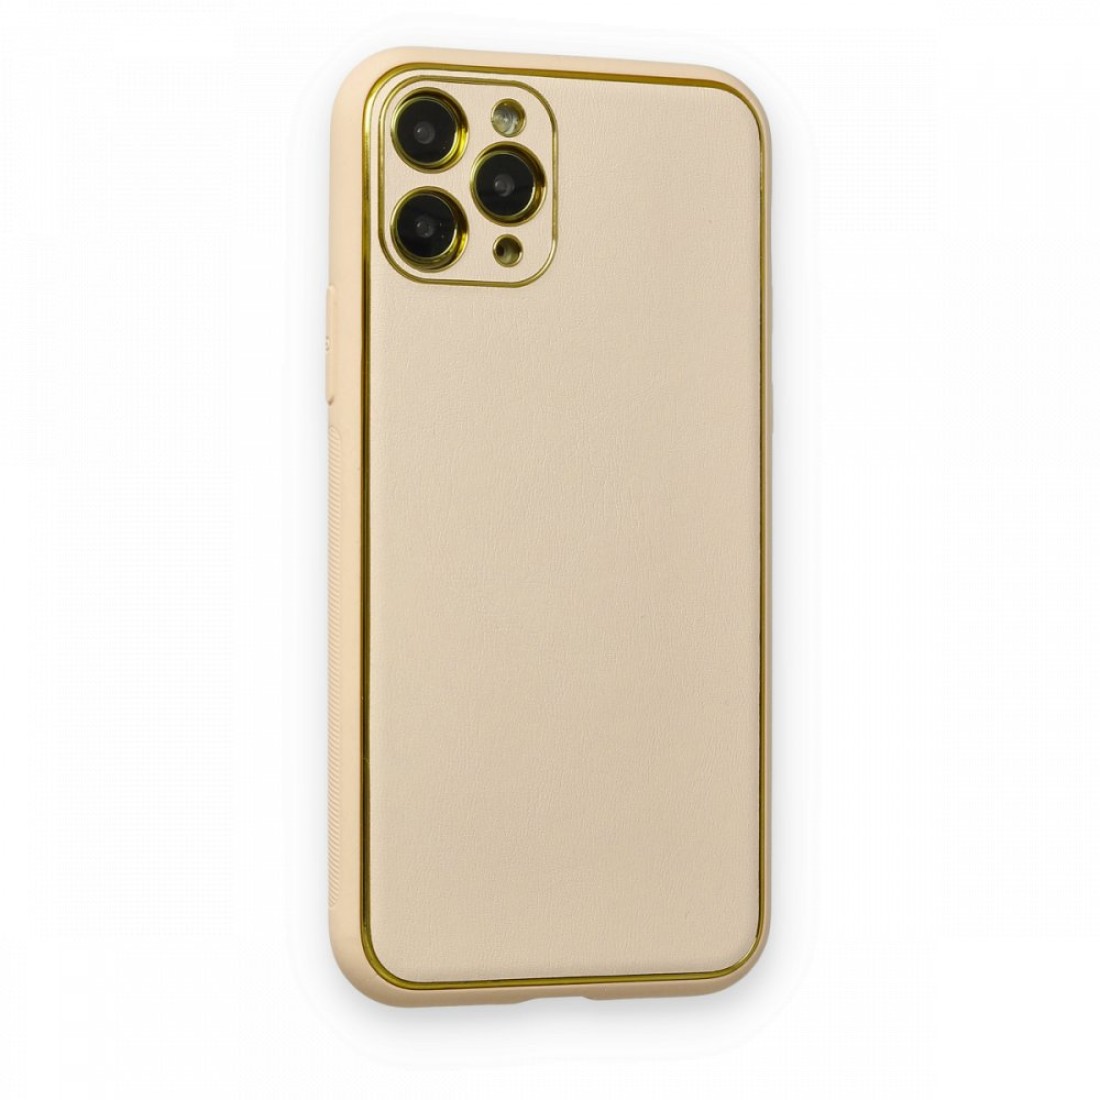 Apple iPhone 11 Pro Kılıf Coco Deri Silikon Kapak - Gold